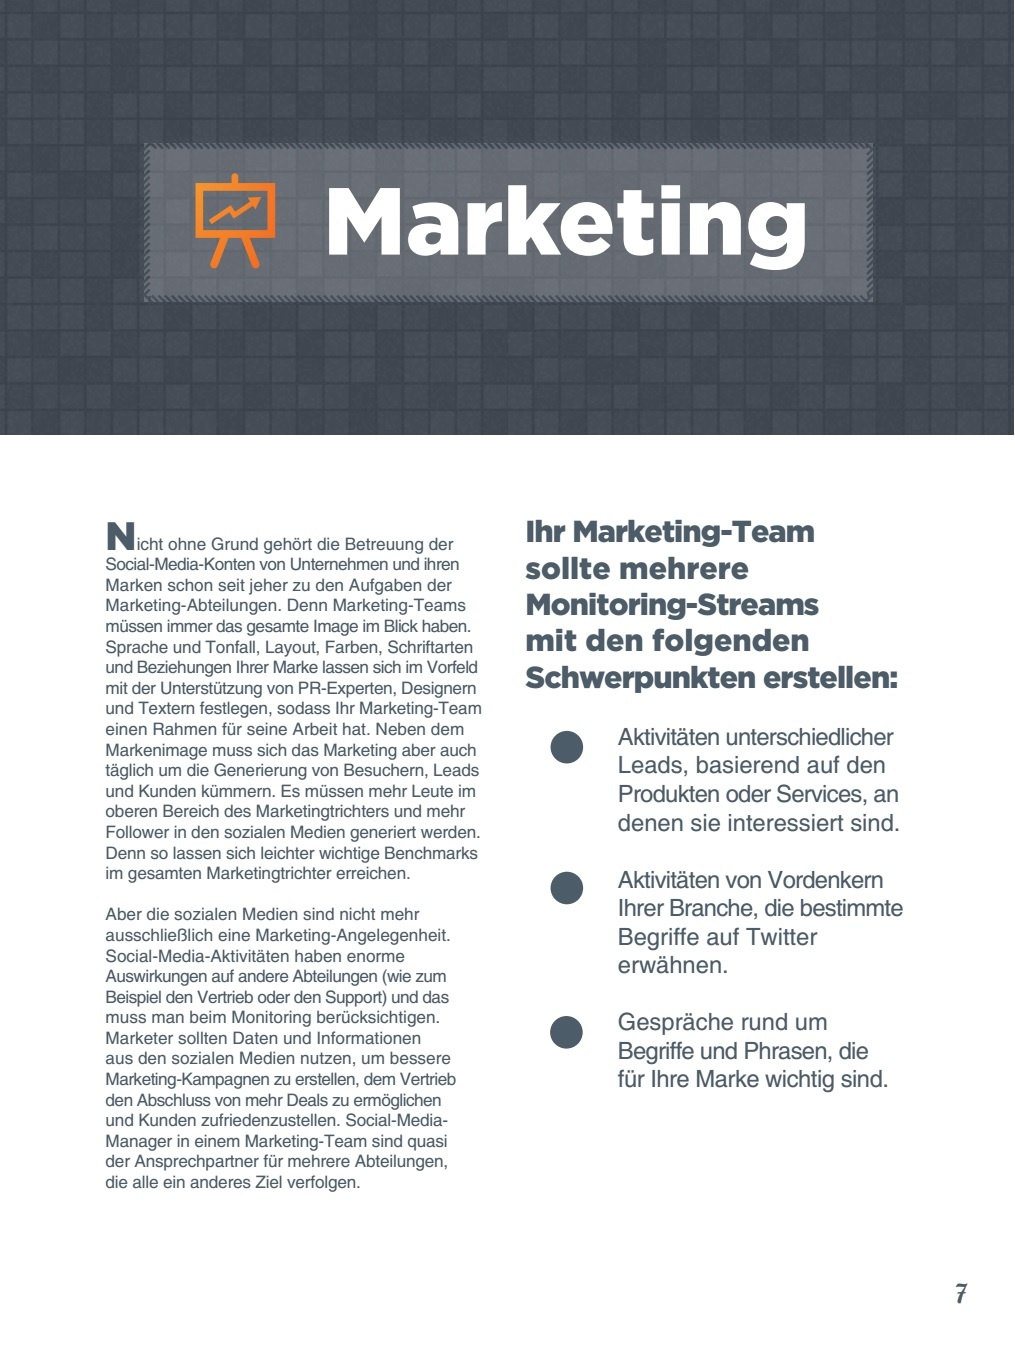 Social-Media-Monitoring für das Marketing